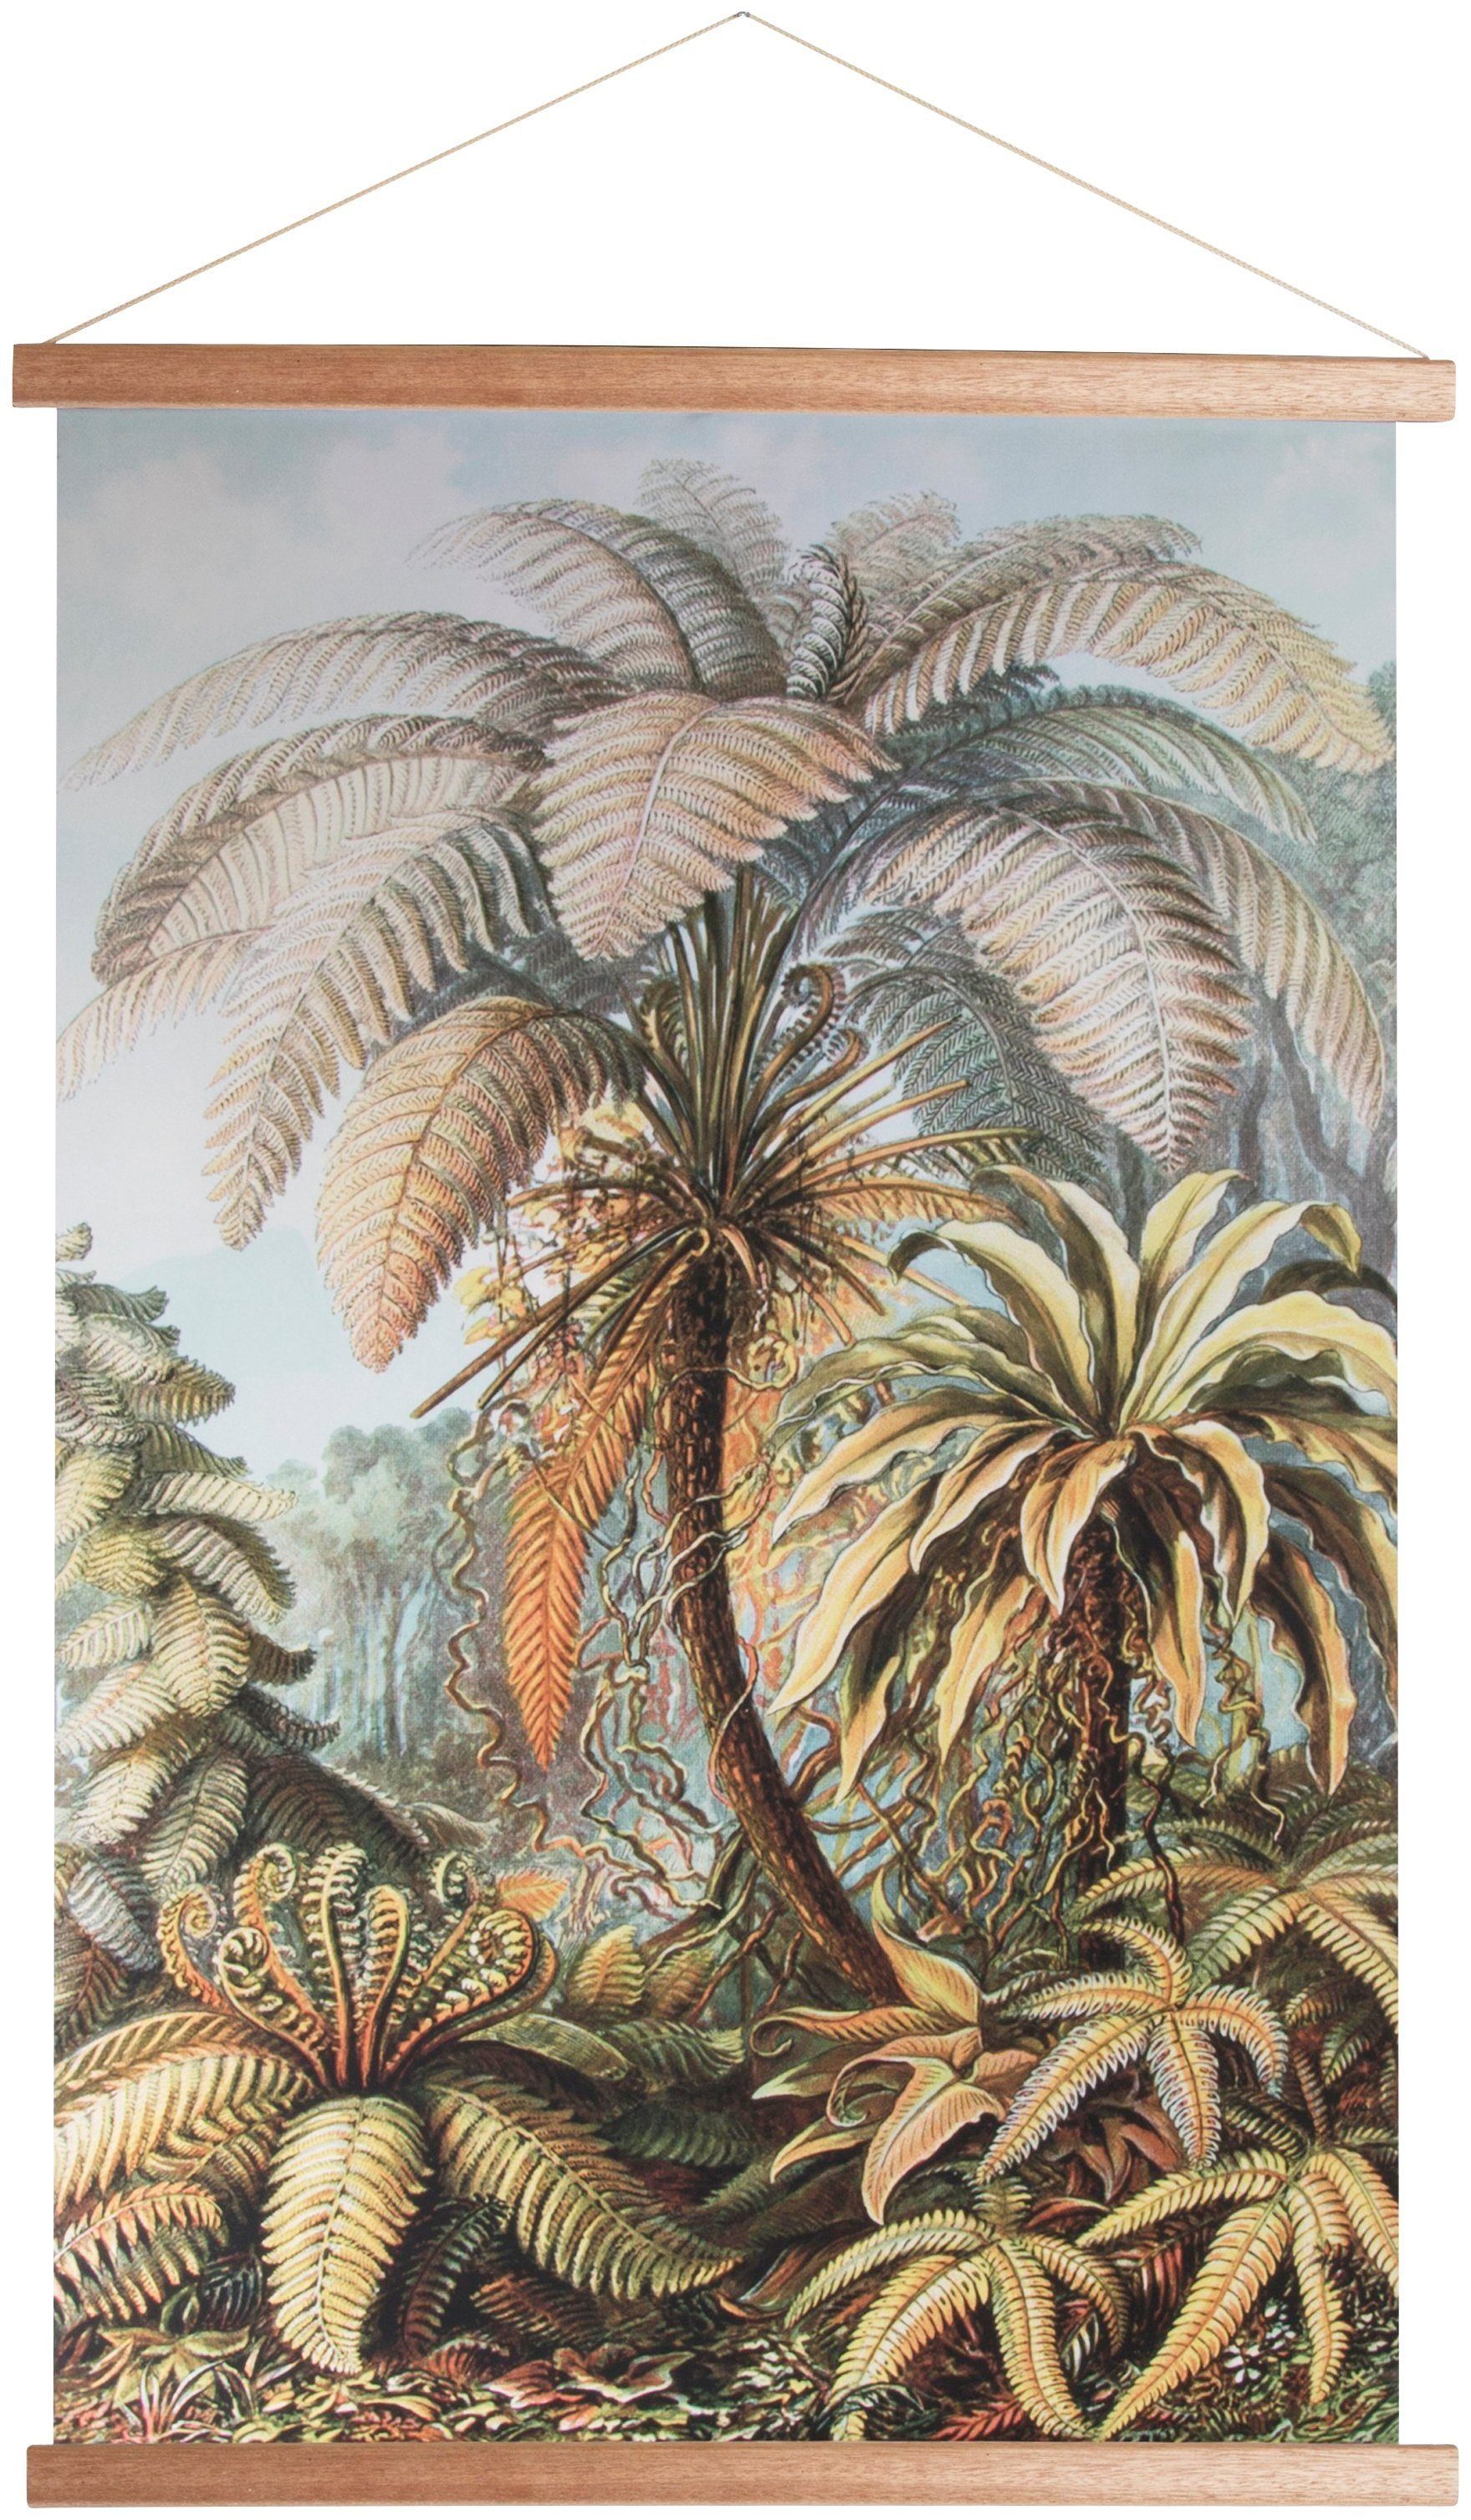 Art for the Poster Poster, home Wandposter Wandbild, Bild, Pflanzen, 100x70cm, Dschungel